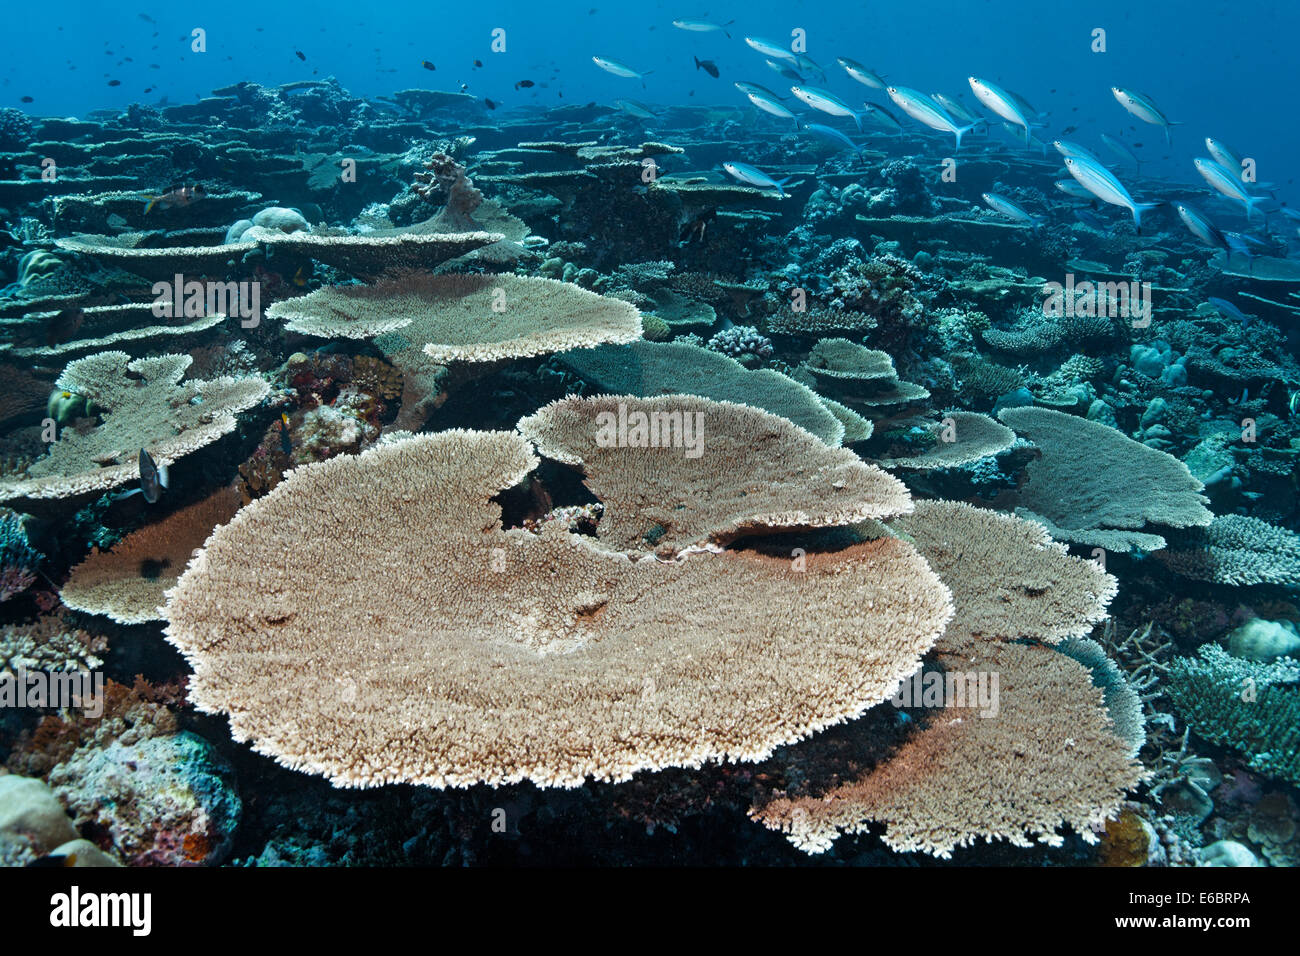 Acropora avec platier de corail Acropora hyacinthus (table), doublée de variable fusiliers (Caesio varilineata), de l'Océan Indien Banque D'Images